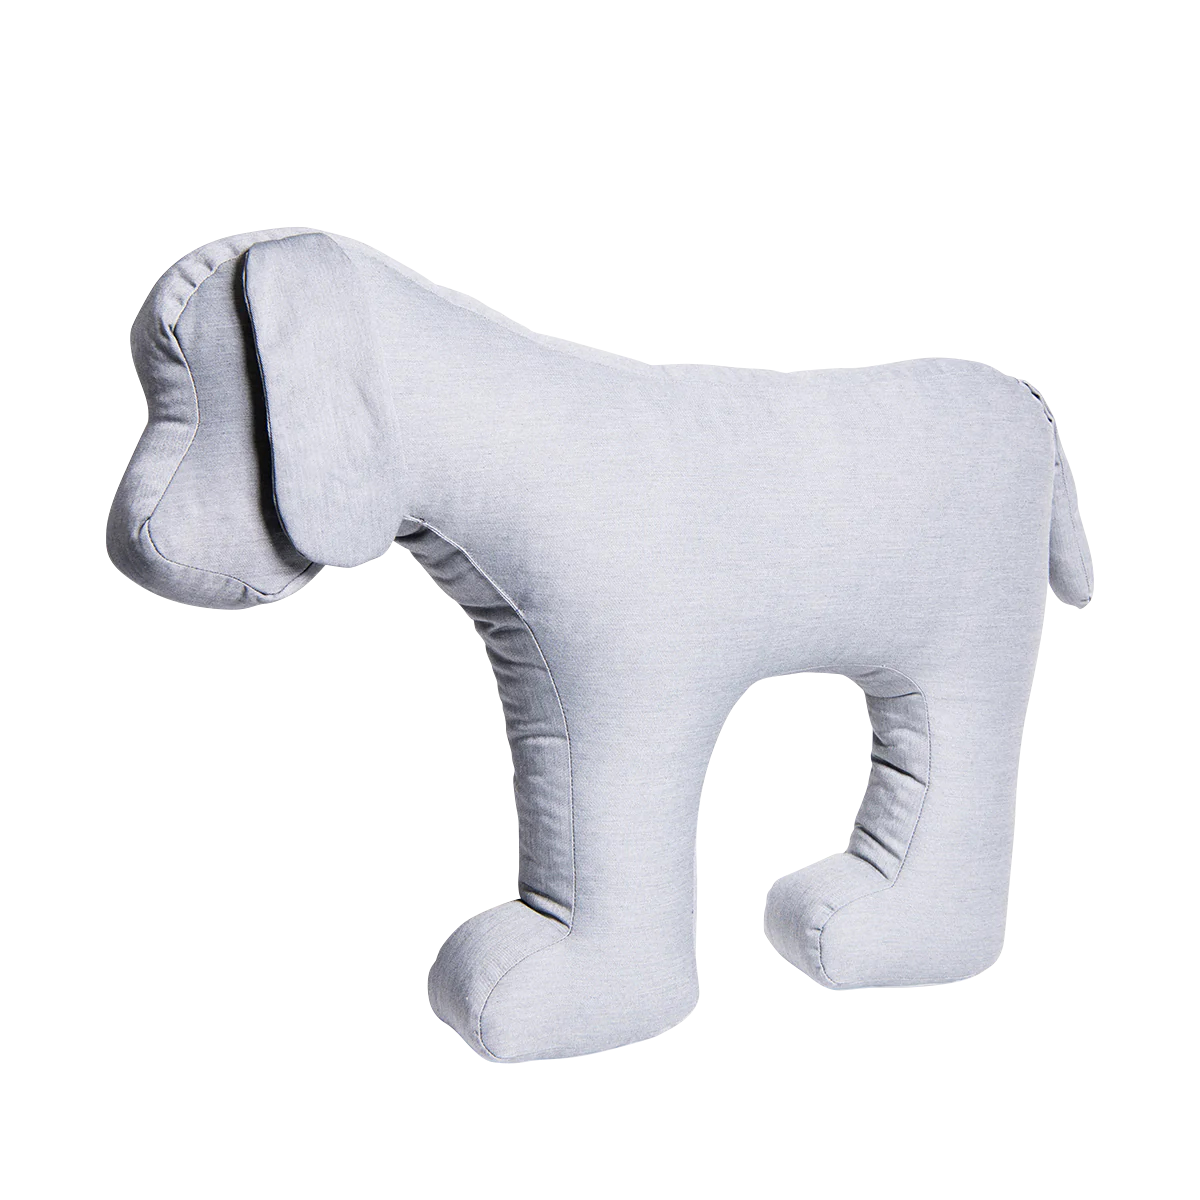 Stoffhund HANS-DIETER - Hundespielzeug